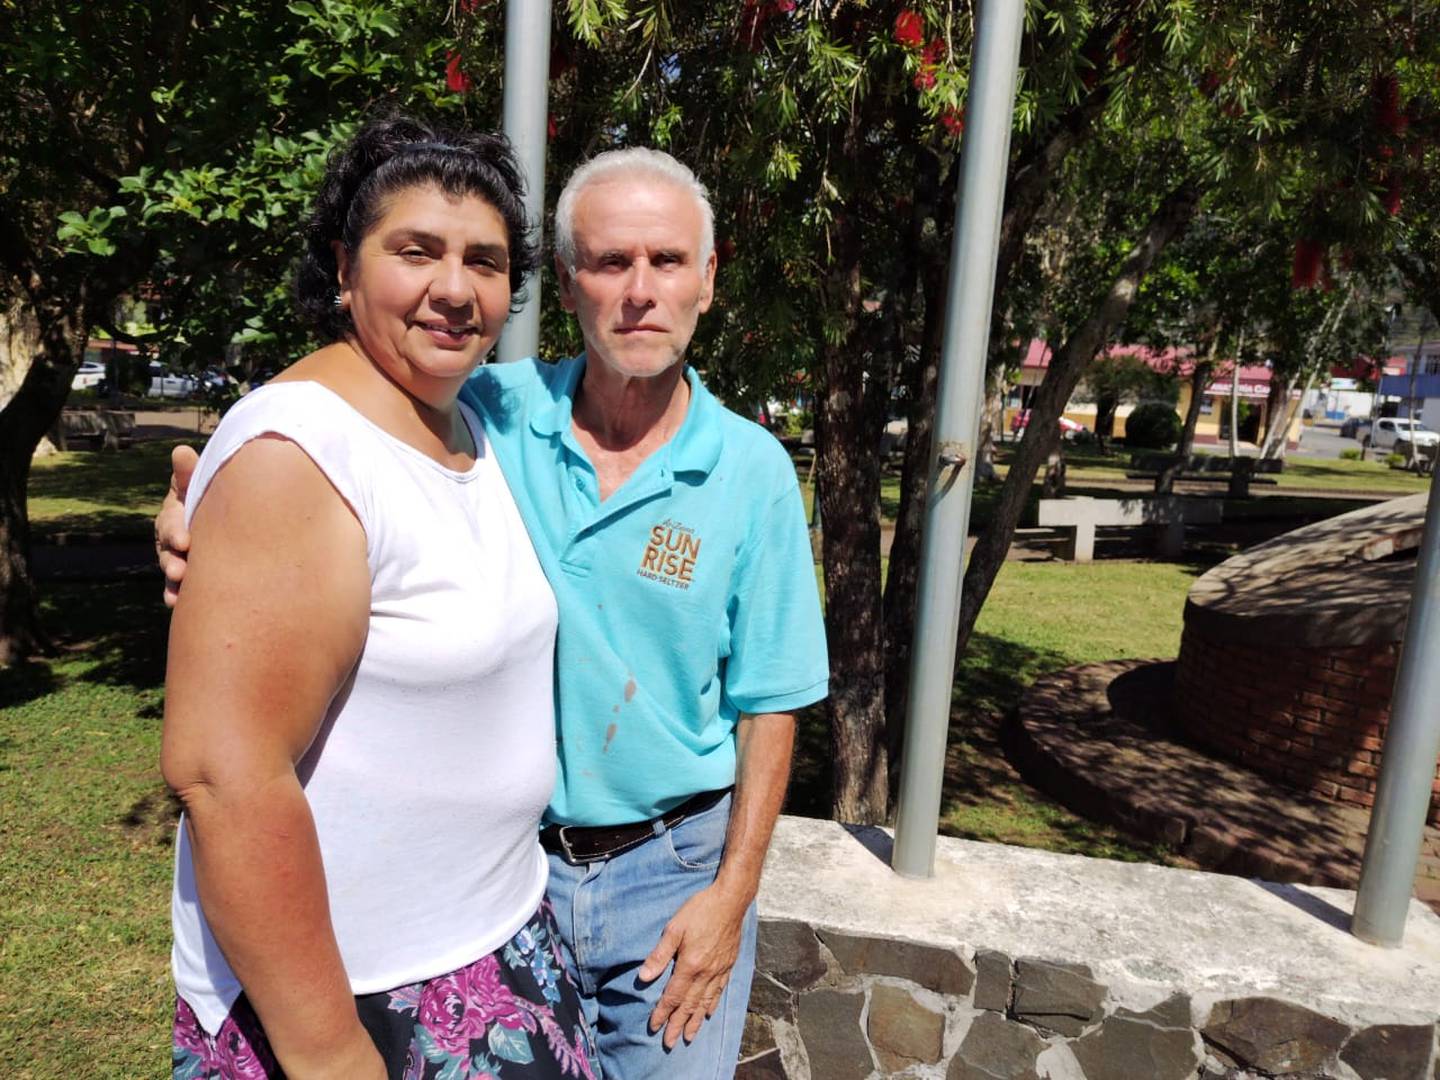 Guiselle Romero y Carlos Rodríguez son vecinos de El Guayabal de Dota, afirman que la gran mayoría de pobladores de Dota tienen un modo de vida muy sano y por eso es un pueblo pacífico. Foto: H. Solano